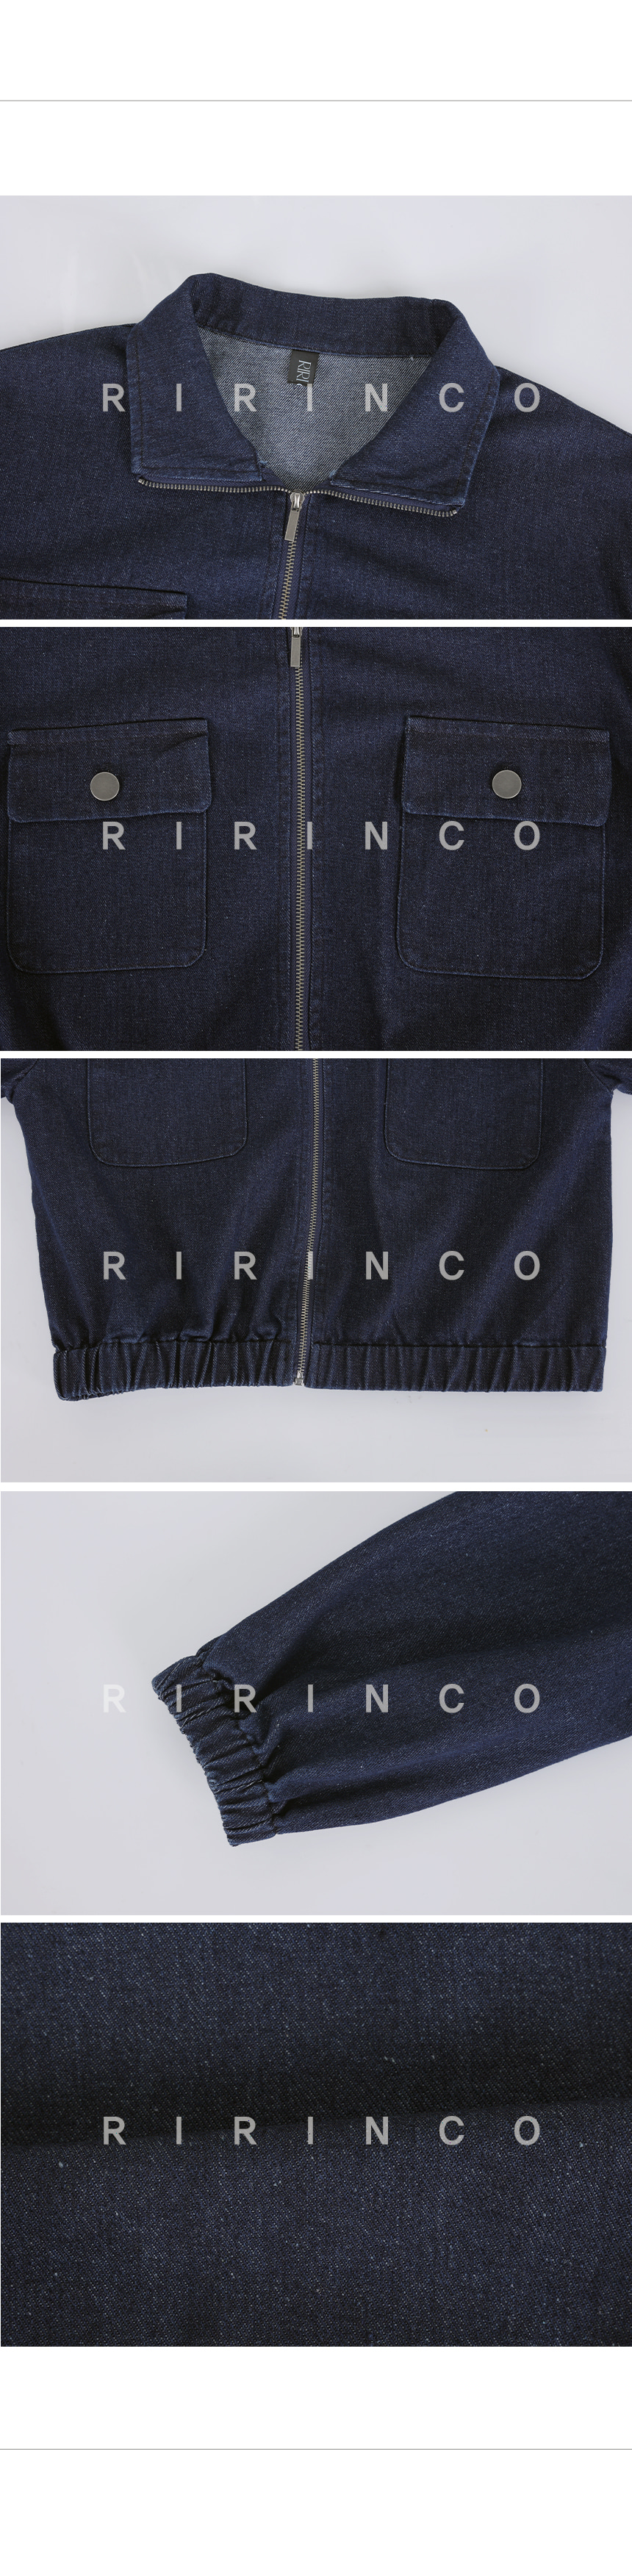 RIRINCO デニムポケット裾ゴムジャンパー